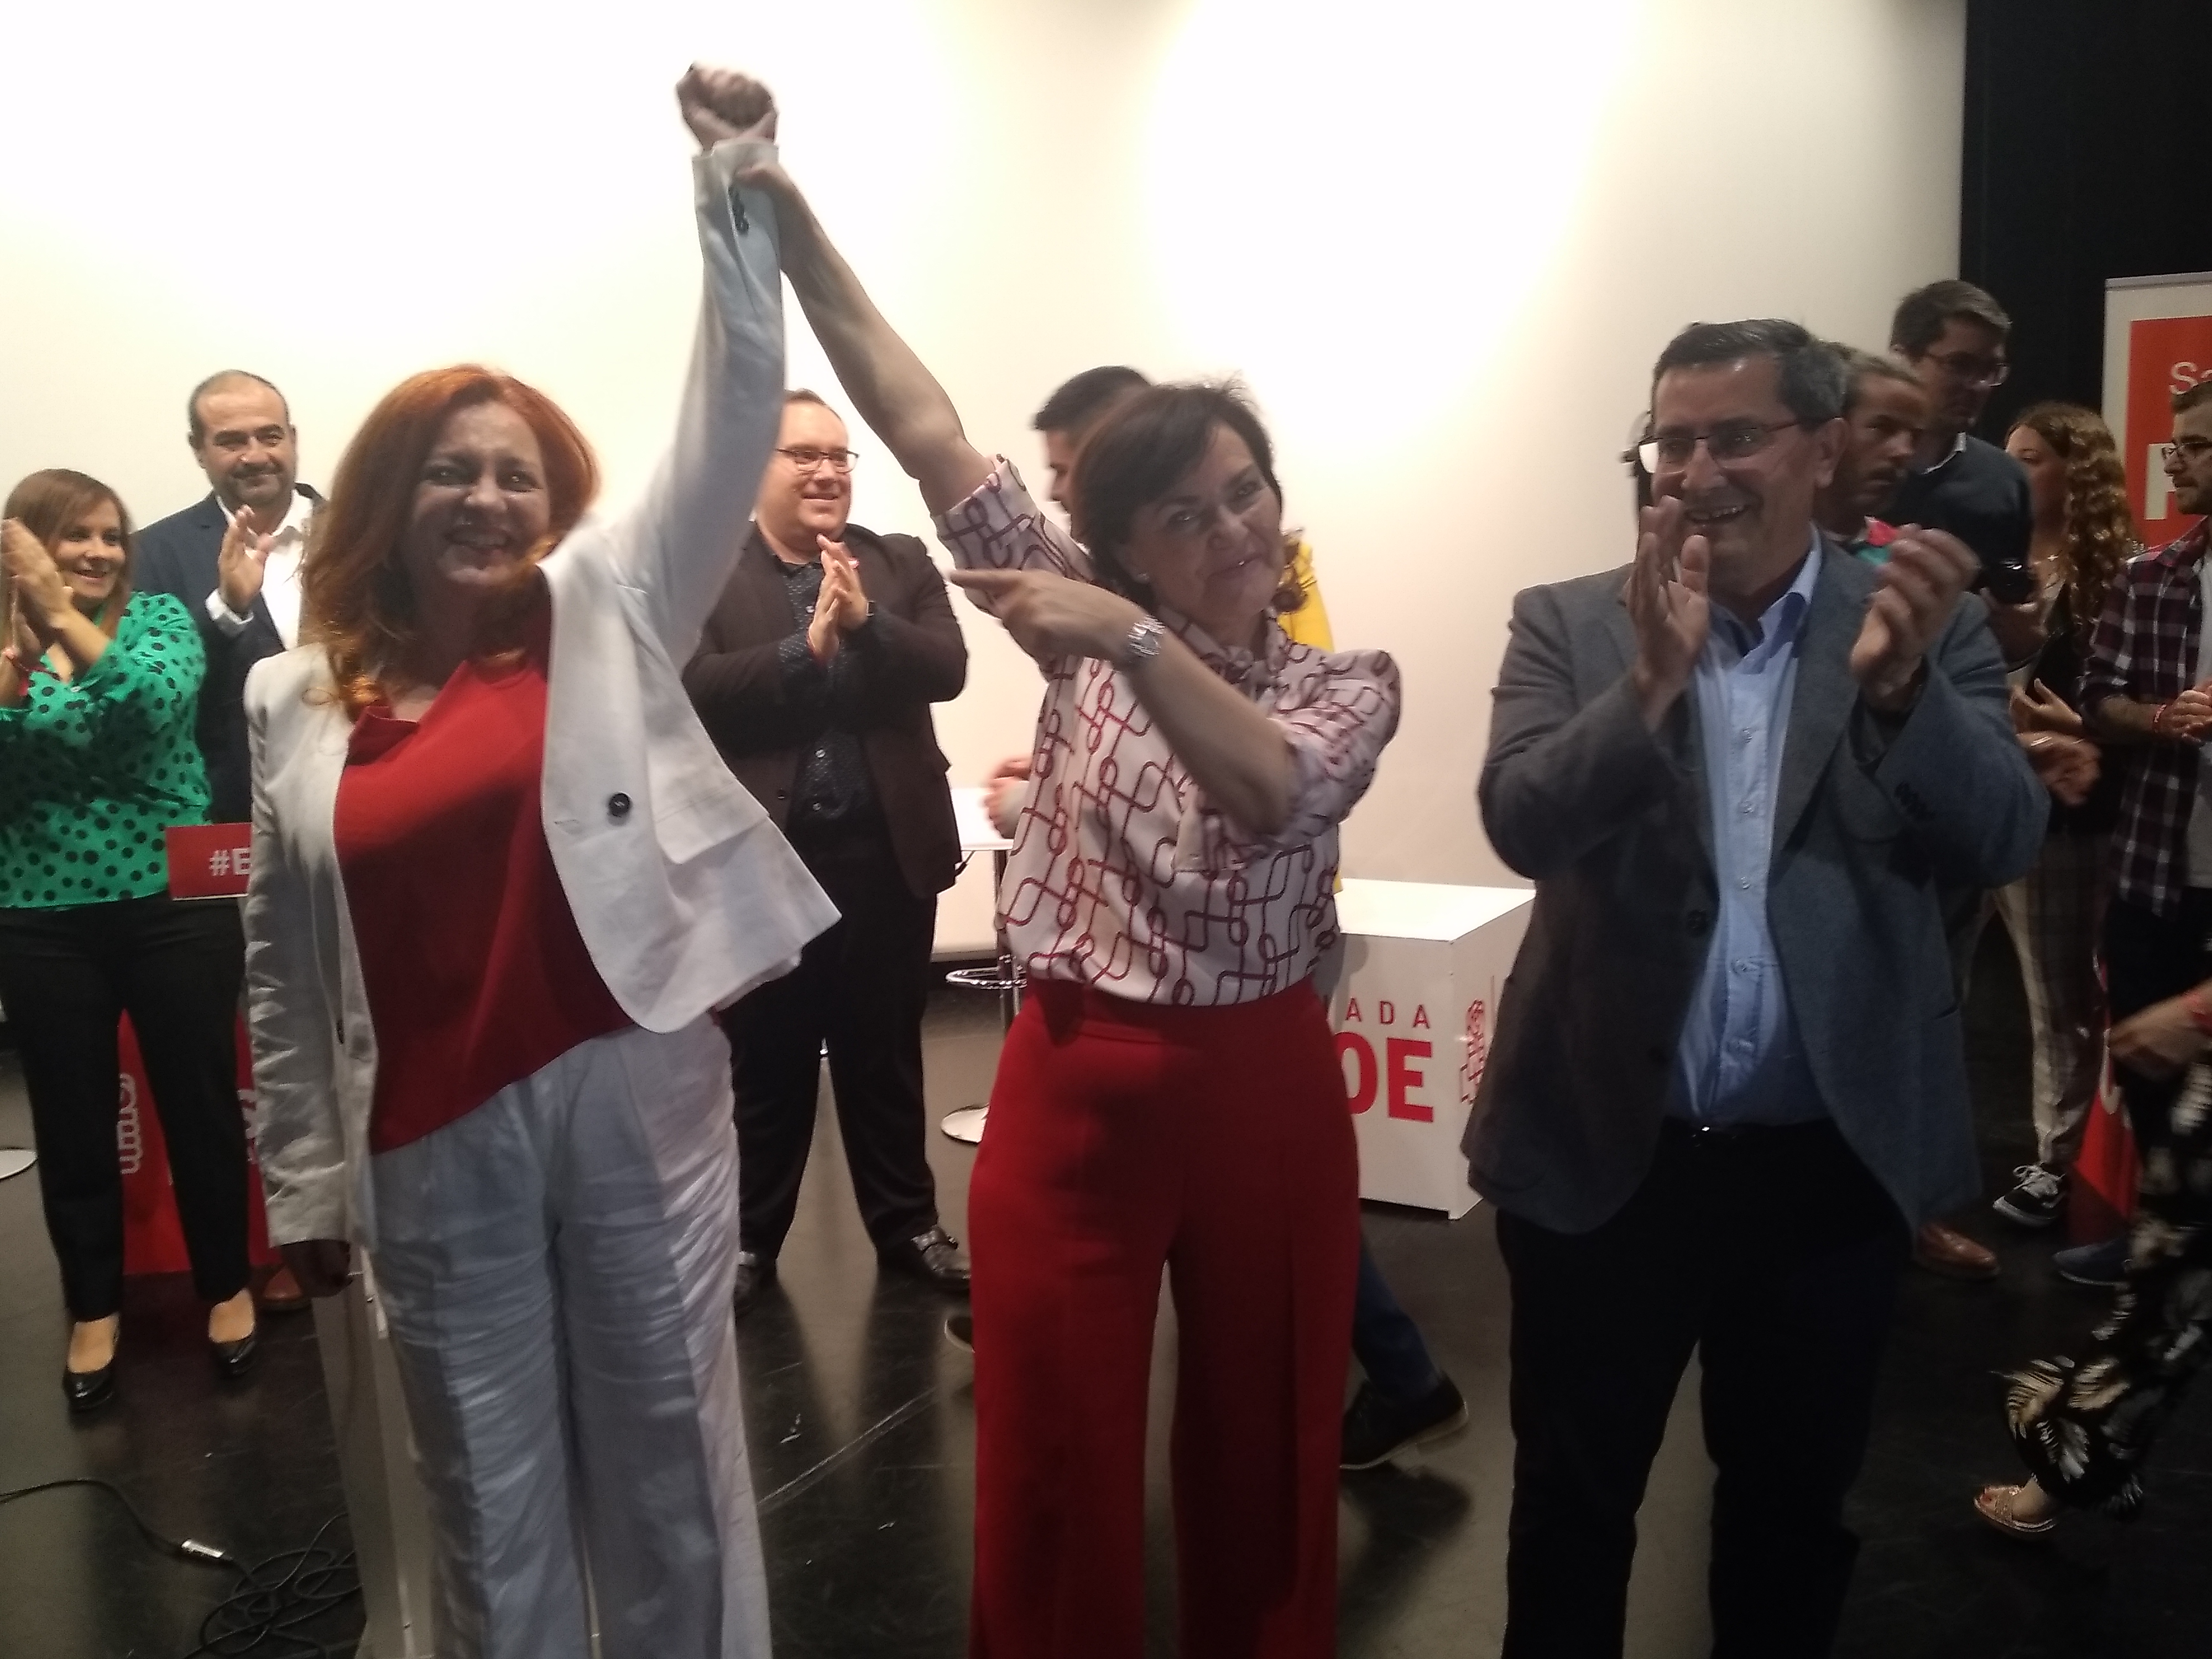 Entrena asegura que el 28-A sitúa en “buena posición” al PSOE para afrontar las municipales